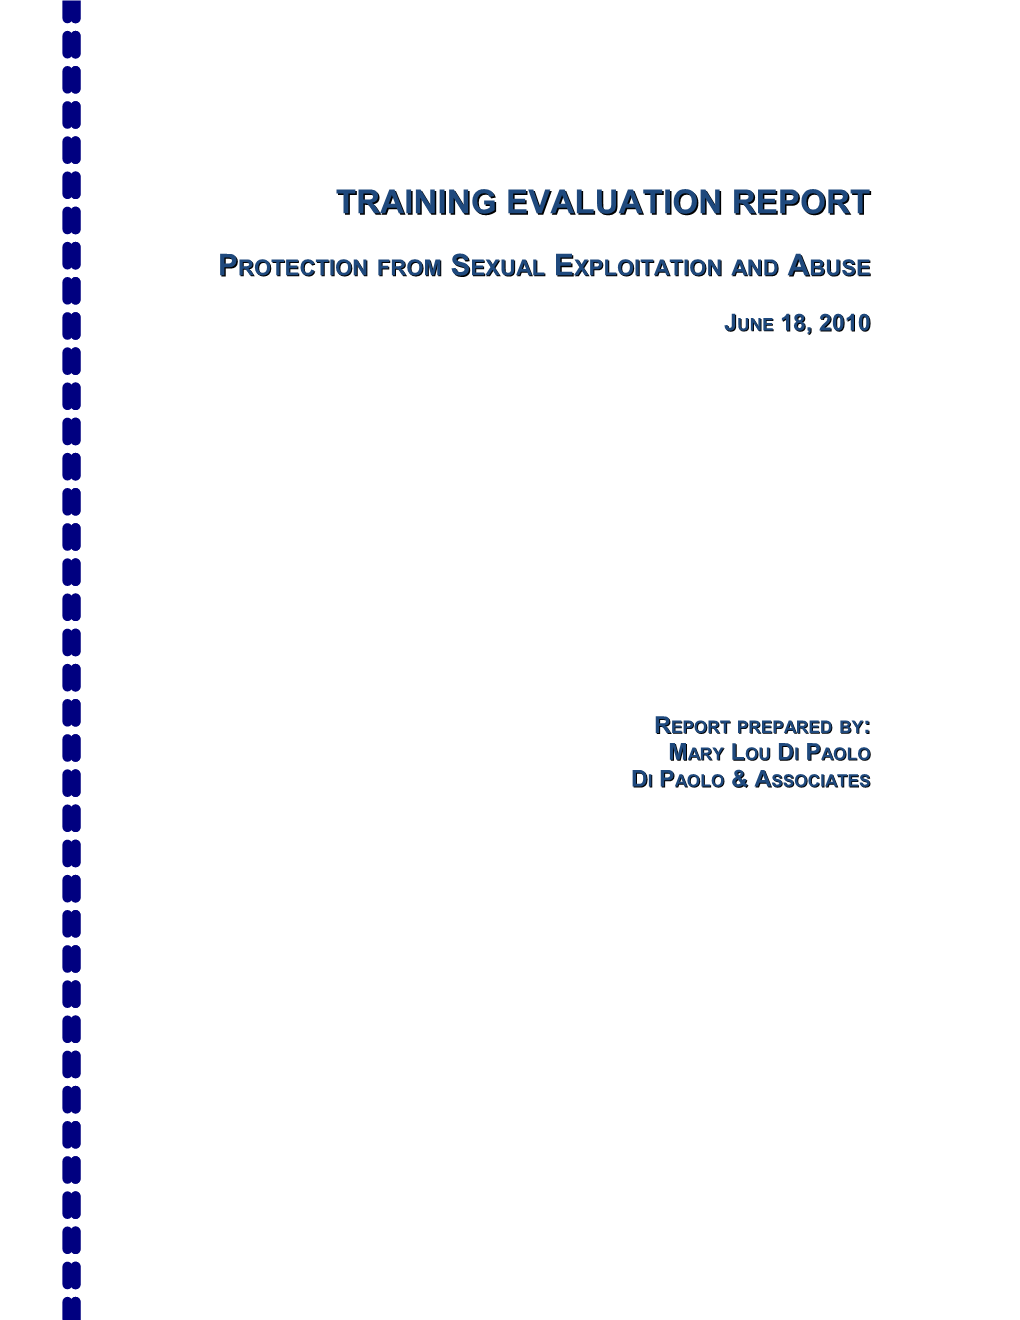 Summary Training Report